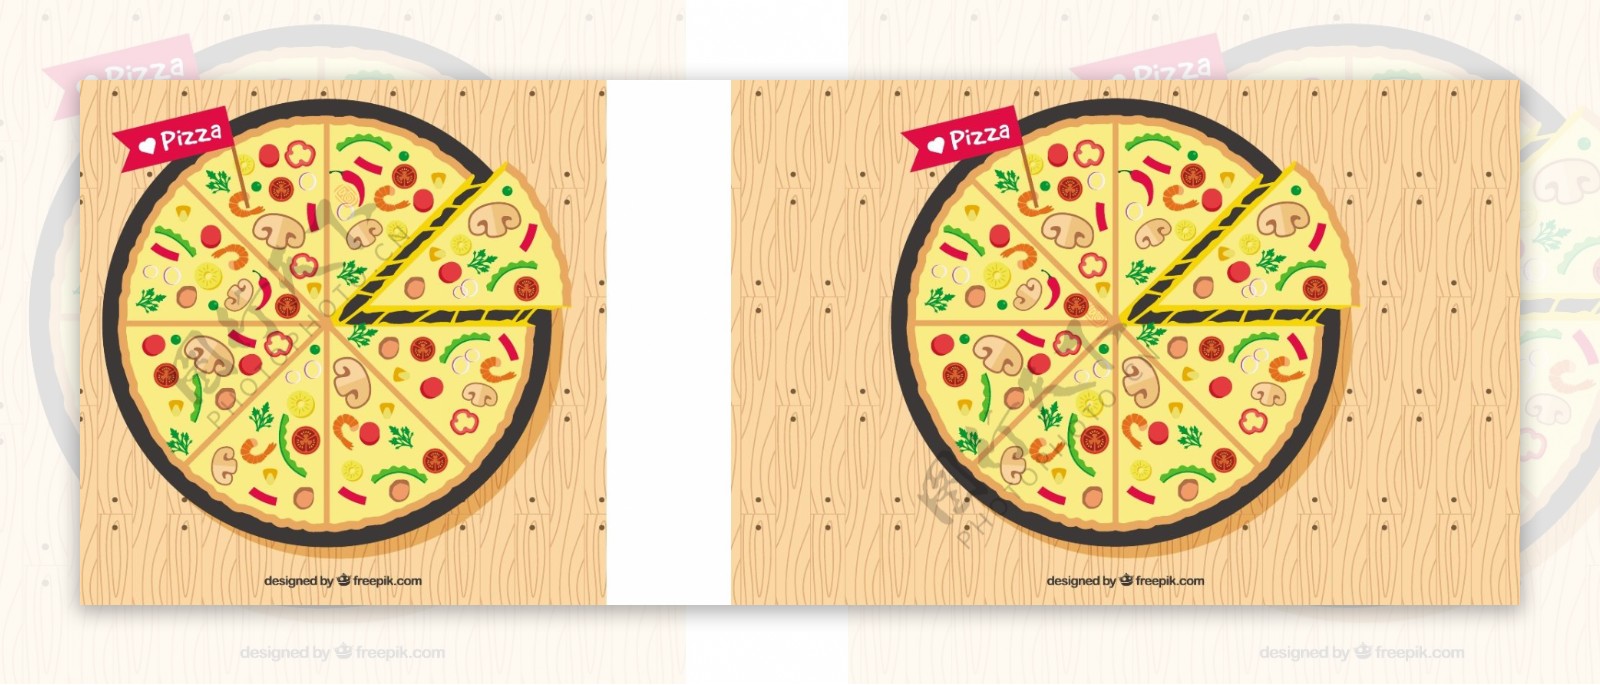 比萨的小册子和成分的平面设计